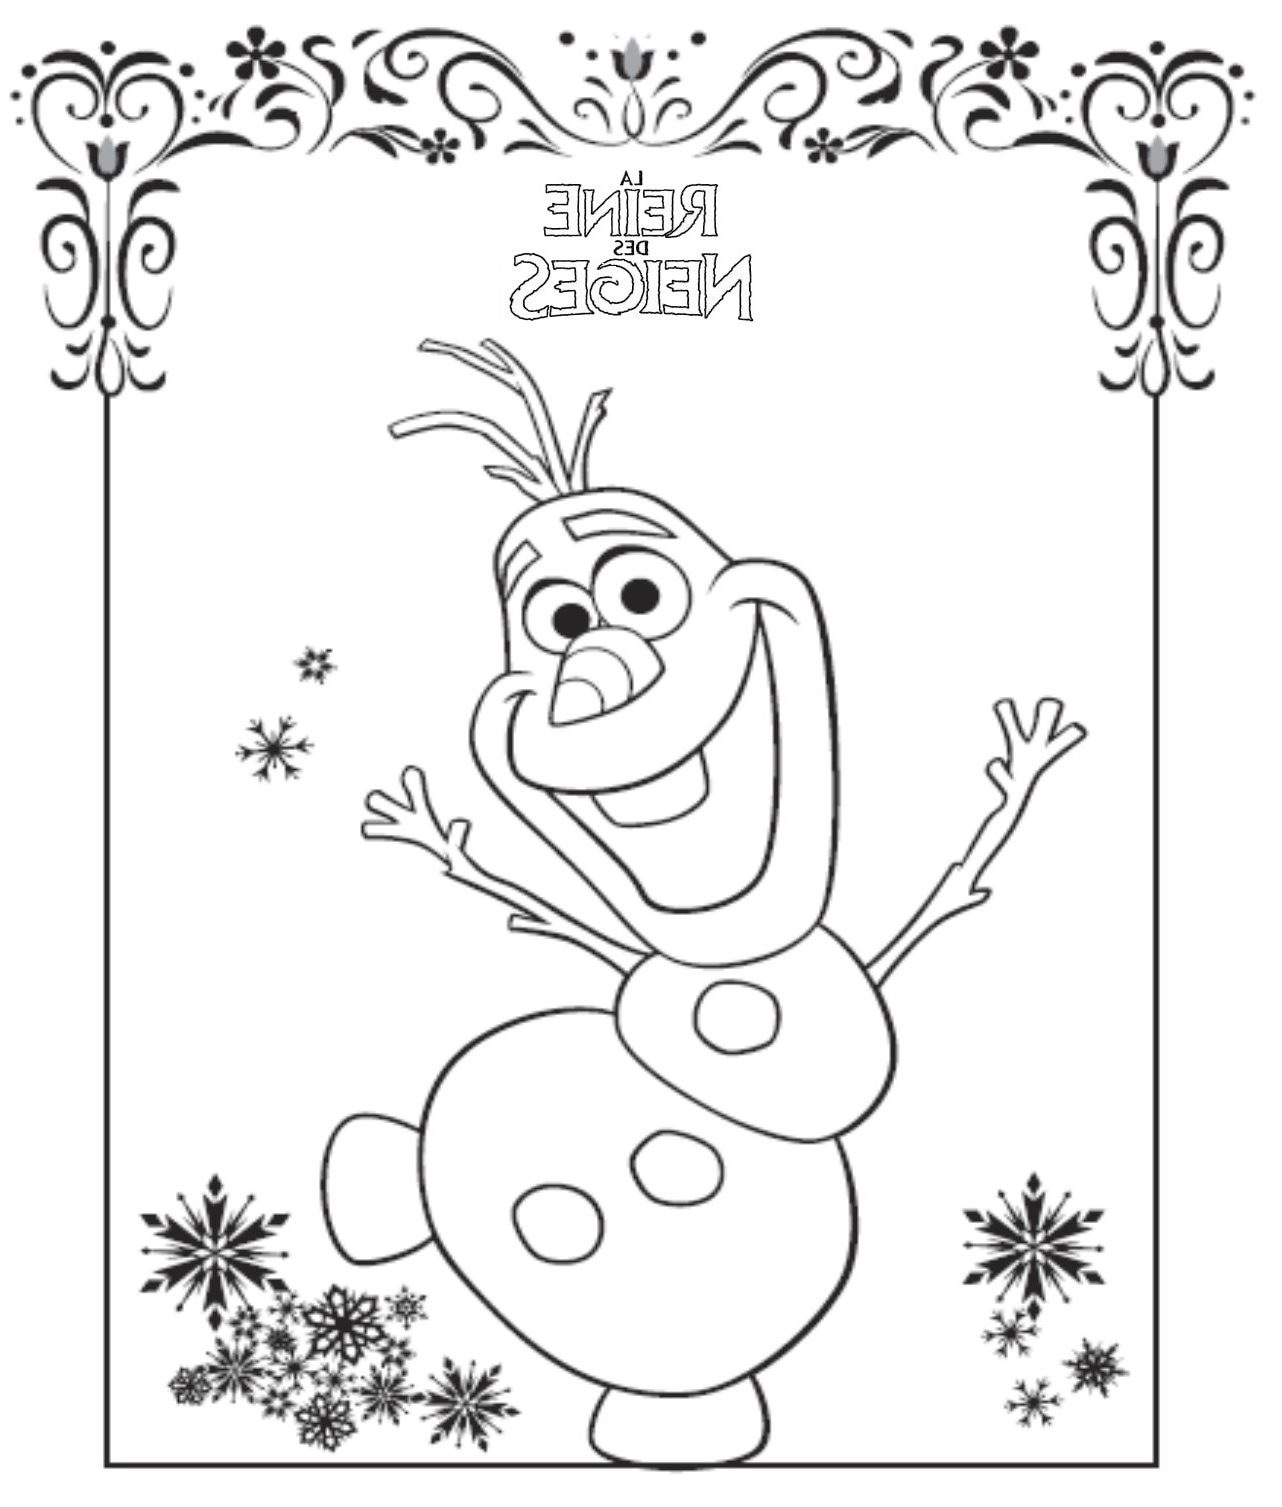 Olaf Dessin Élégant Galerie 144 Dibujos De Disney Frozen Para Colorear Oh Kids